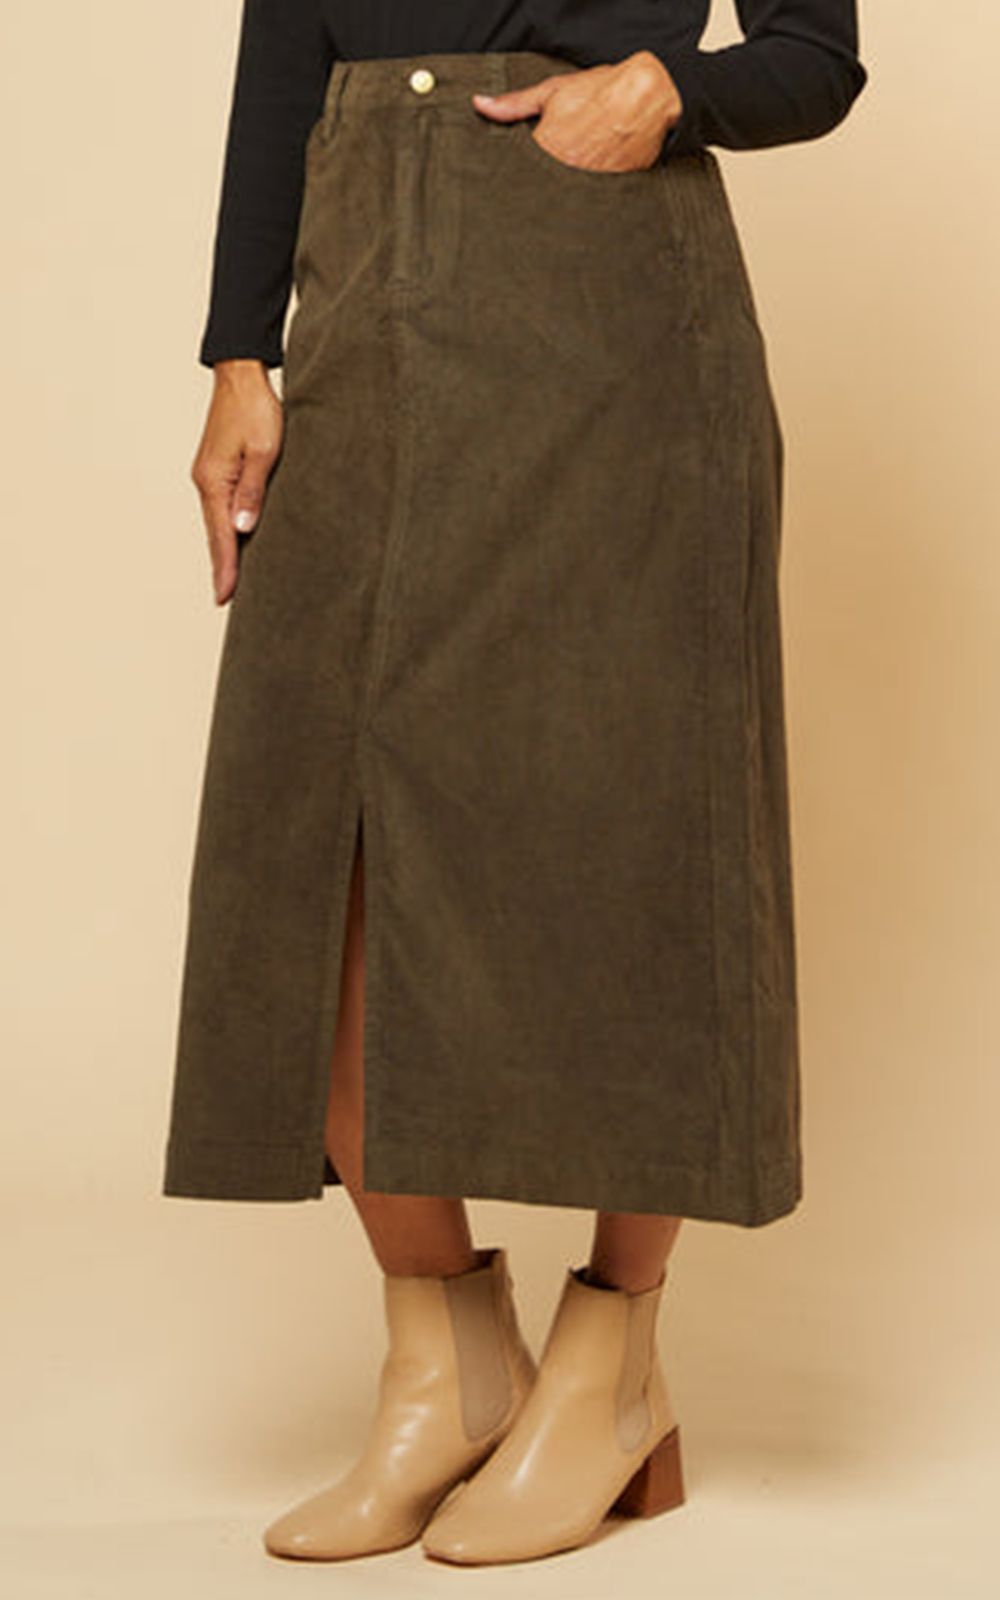 Split Skirt product photo.